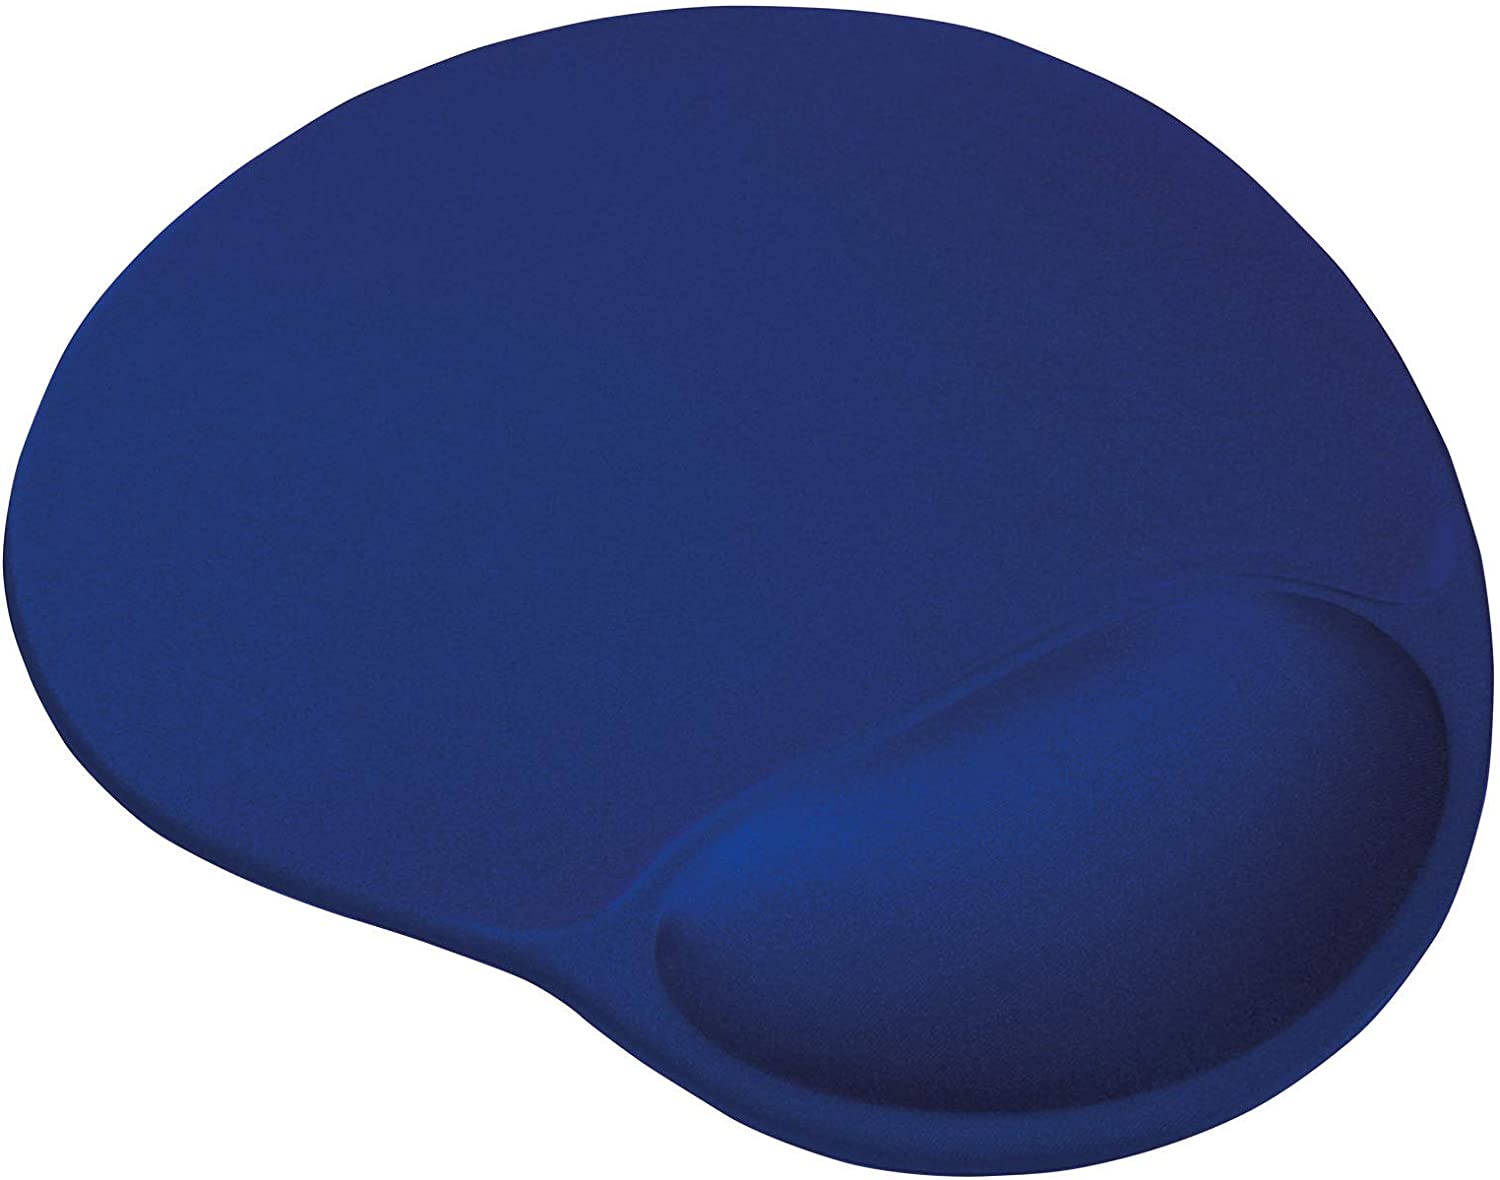 Tapis de souris ergonomique Trust BigFoot - Repose-poignets en gel - 23,6x20,5 cm - Bleu